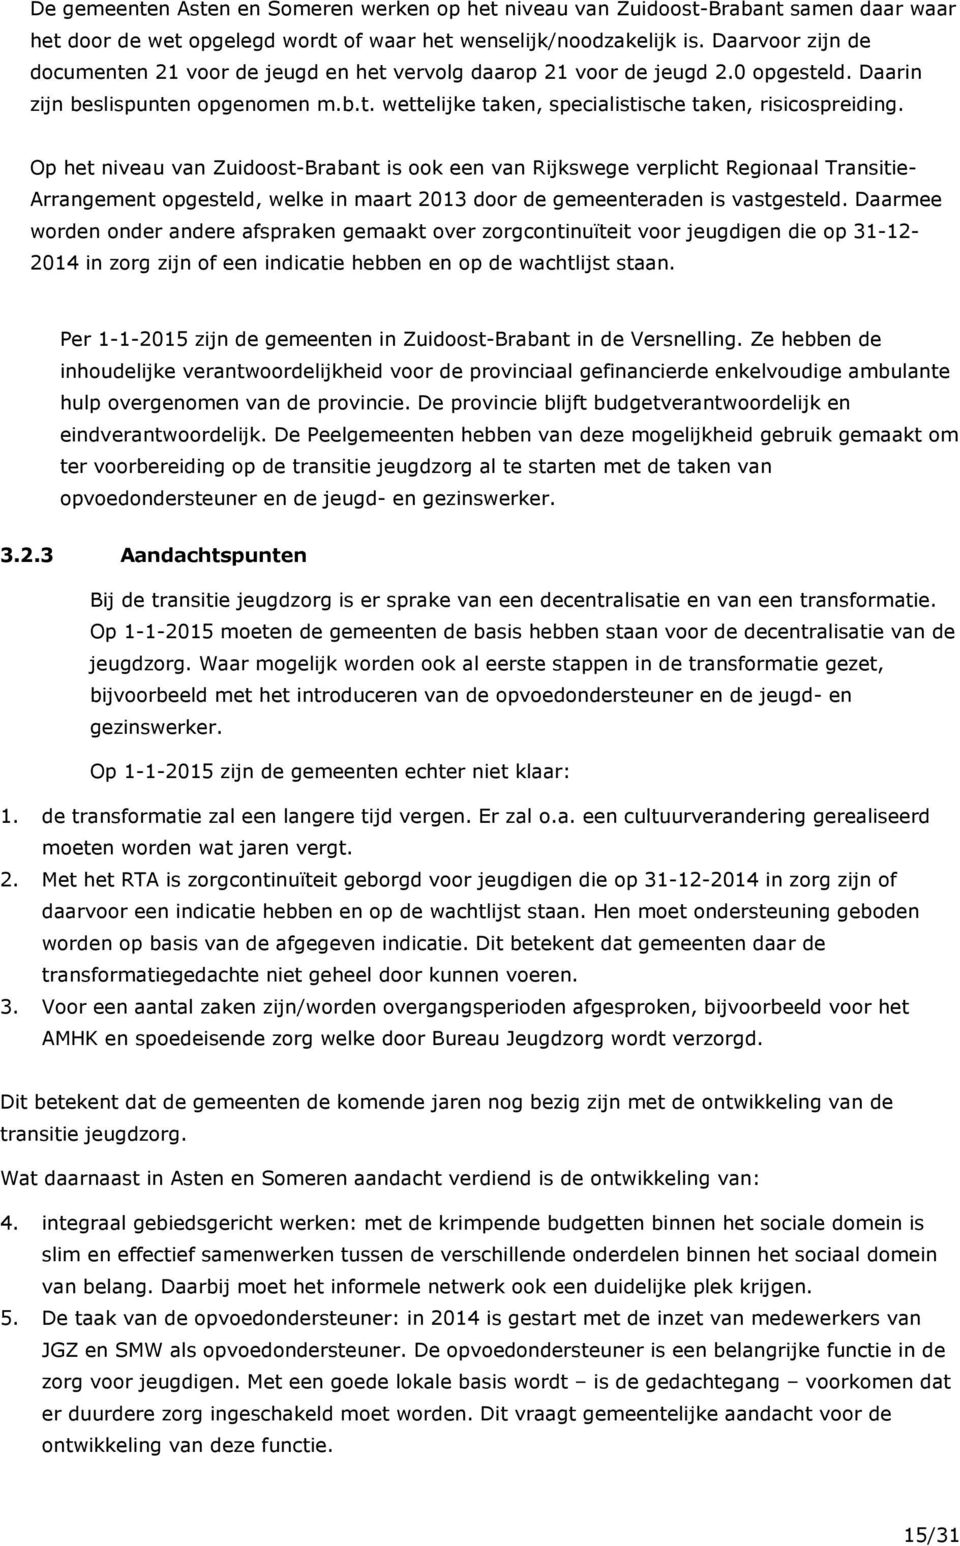 Op het niveau van Zuidoost-Brabant is ook een van Rijkswege verplicht Regionaal Transitie- Arrangement opgesteld, welke in maart 2013 door de gemeenteraden is vastgesteld.